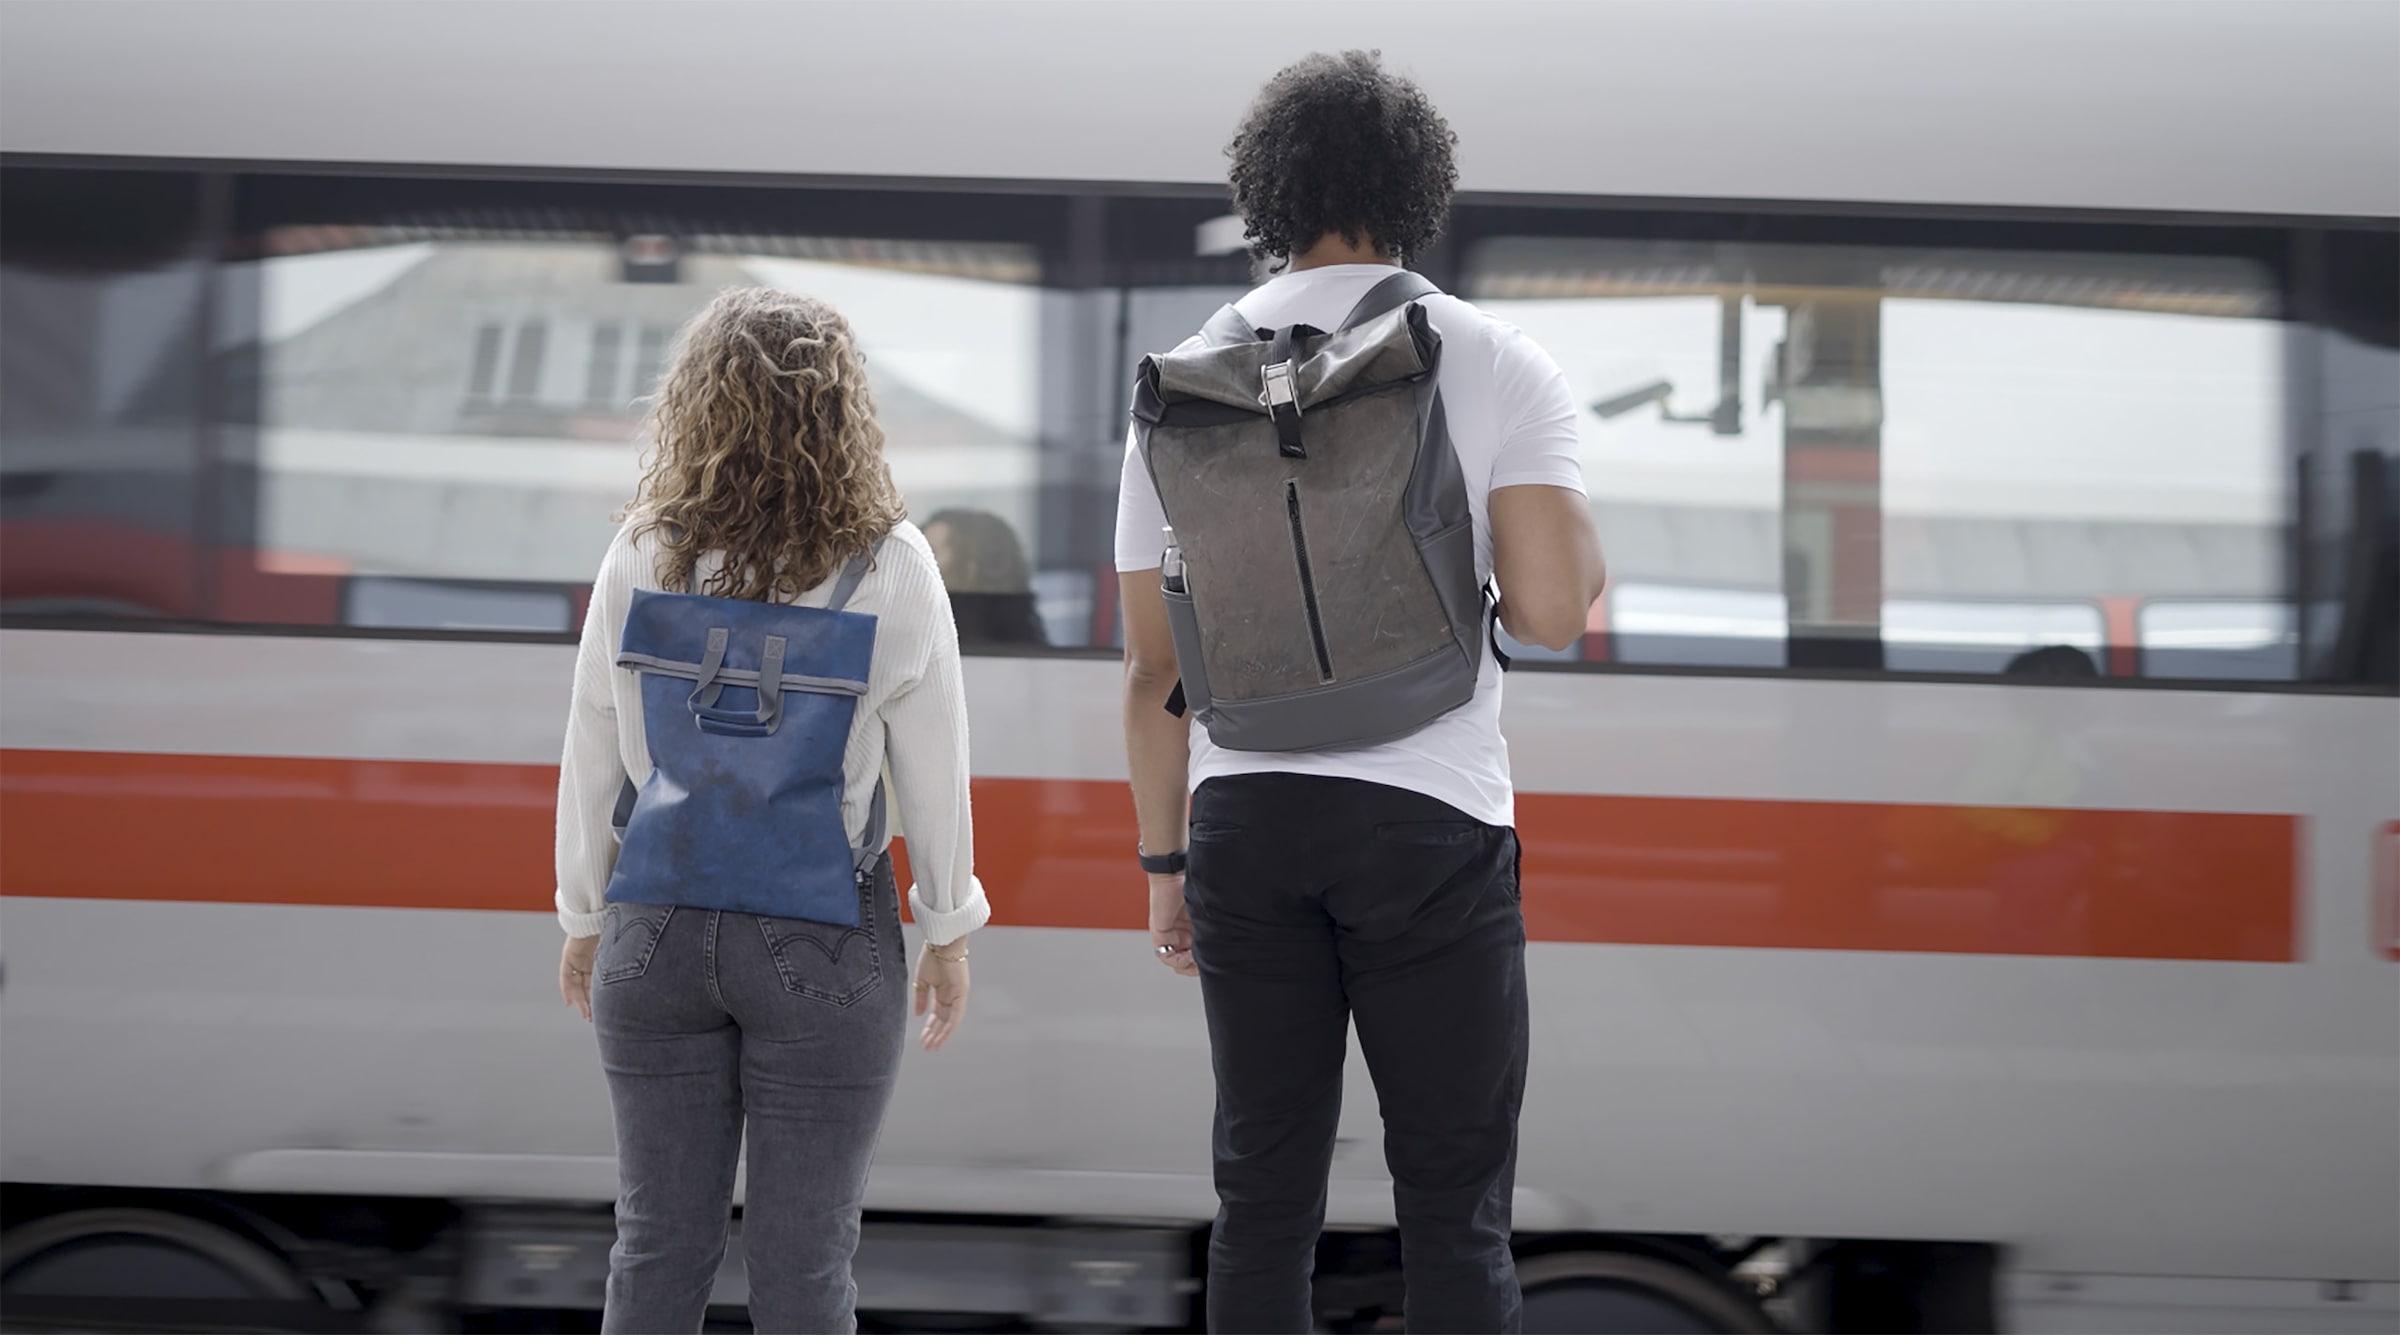 Bag to Life Freizeitrucksack »Jettainer ULD Slim Backpack«, im praktischen Design